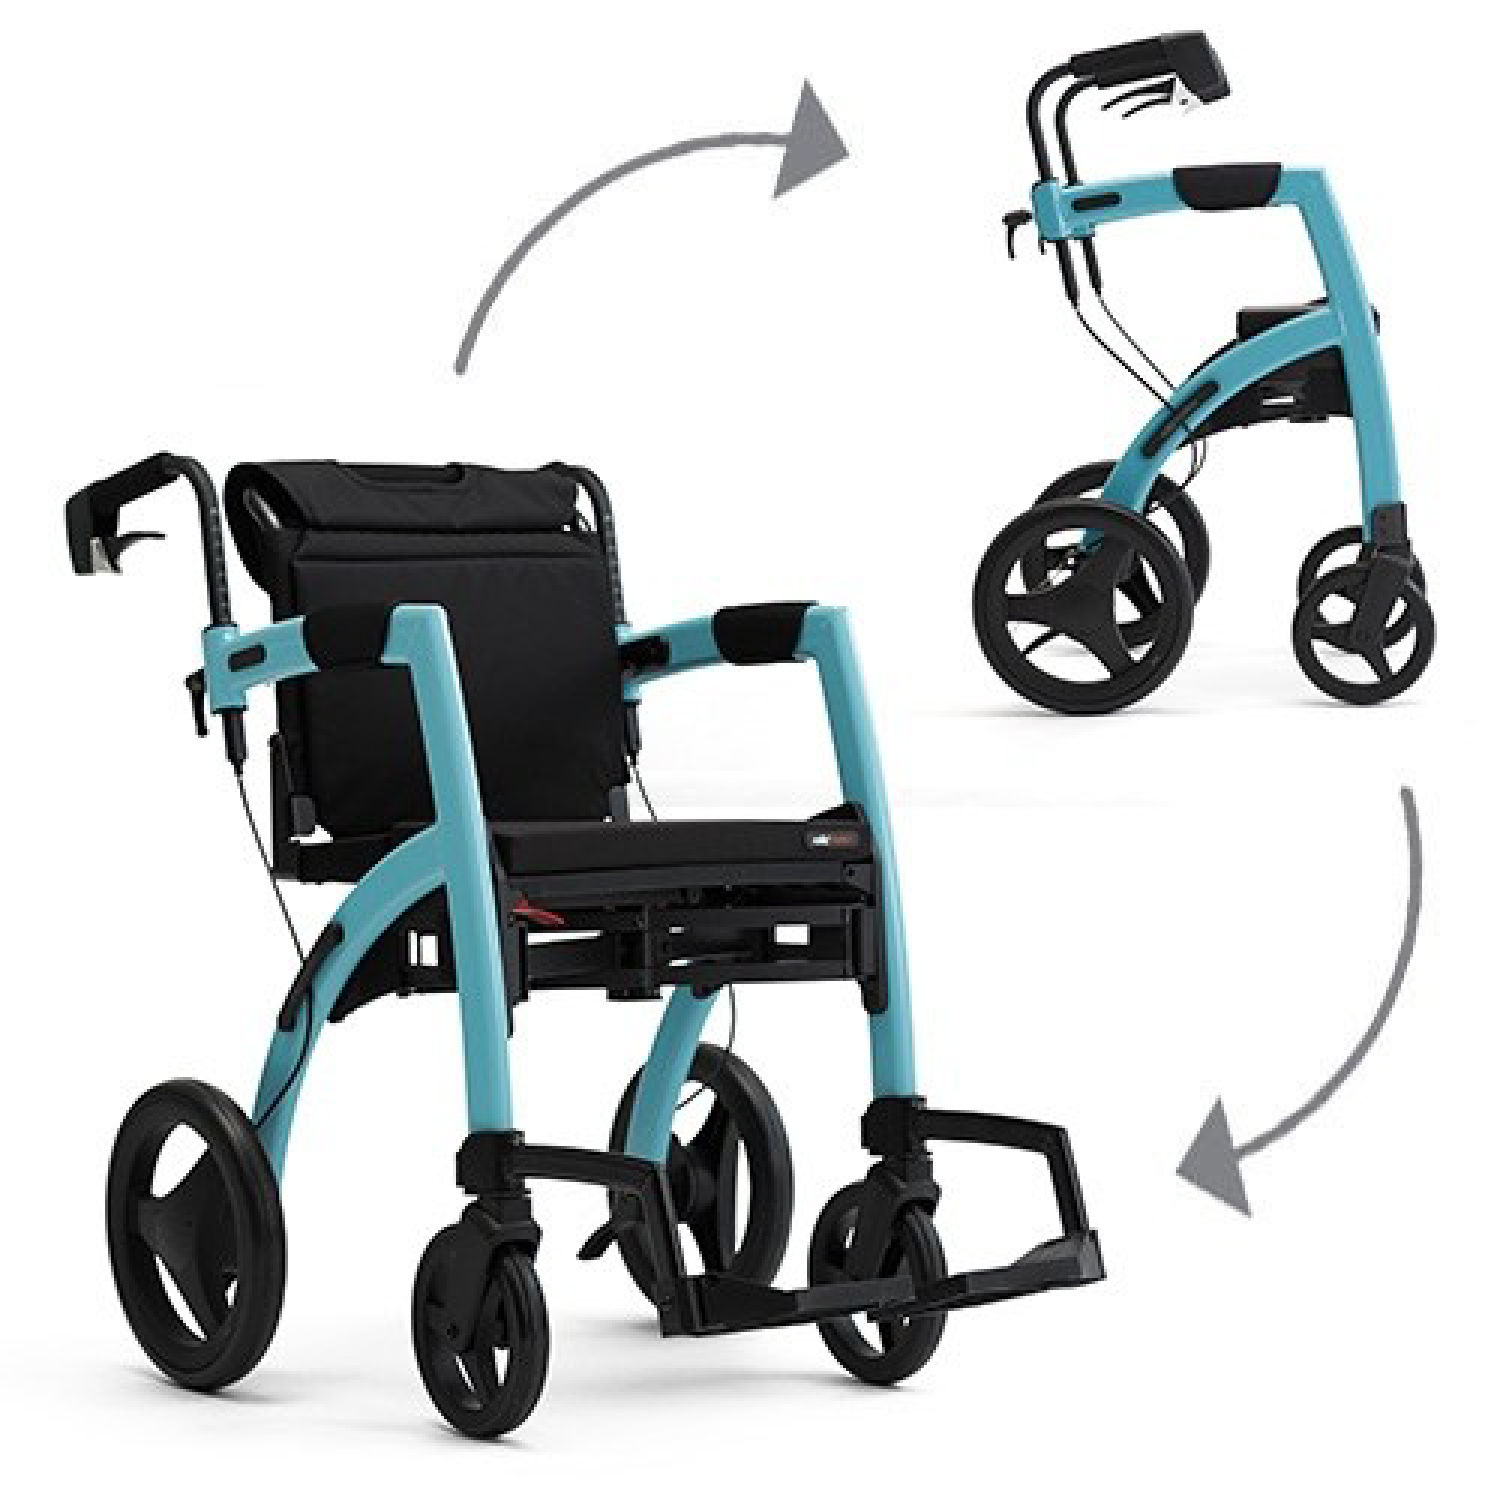 Stoel de wind is sterk Injectie Rollz Motion 2.1 rollator en rolstoel